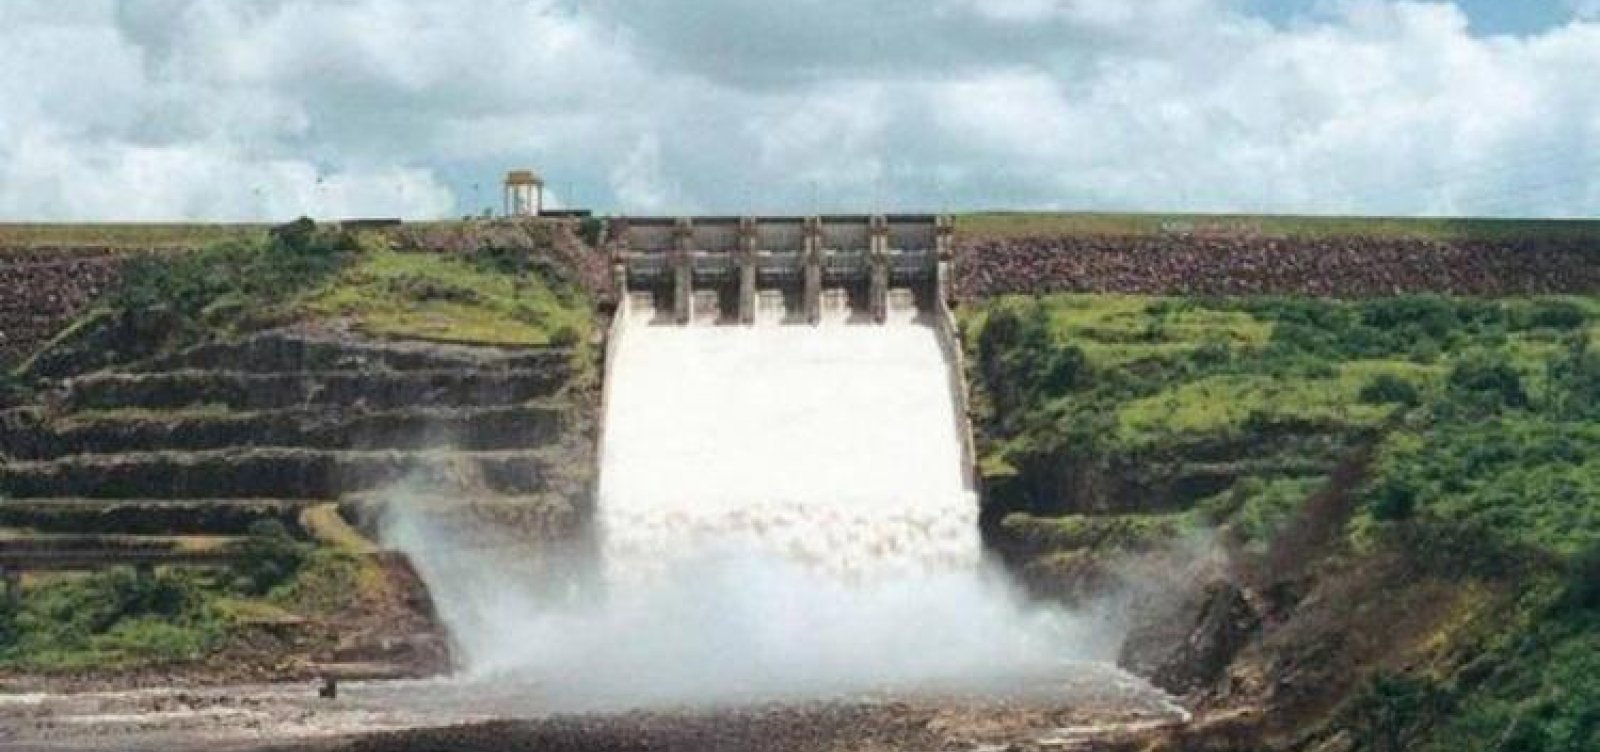 Teste de calha da barragem Pedra do Cavalo é adiado para 17 de agosto